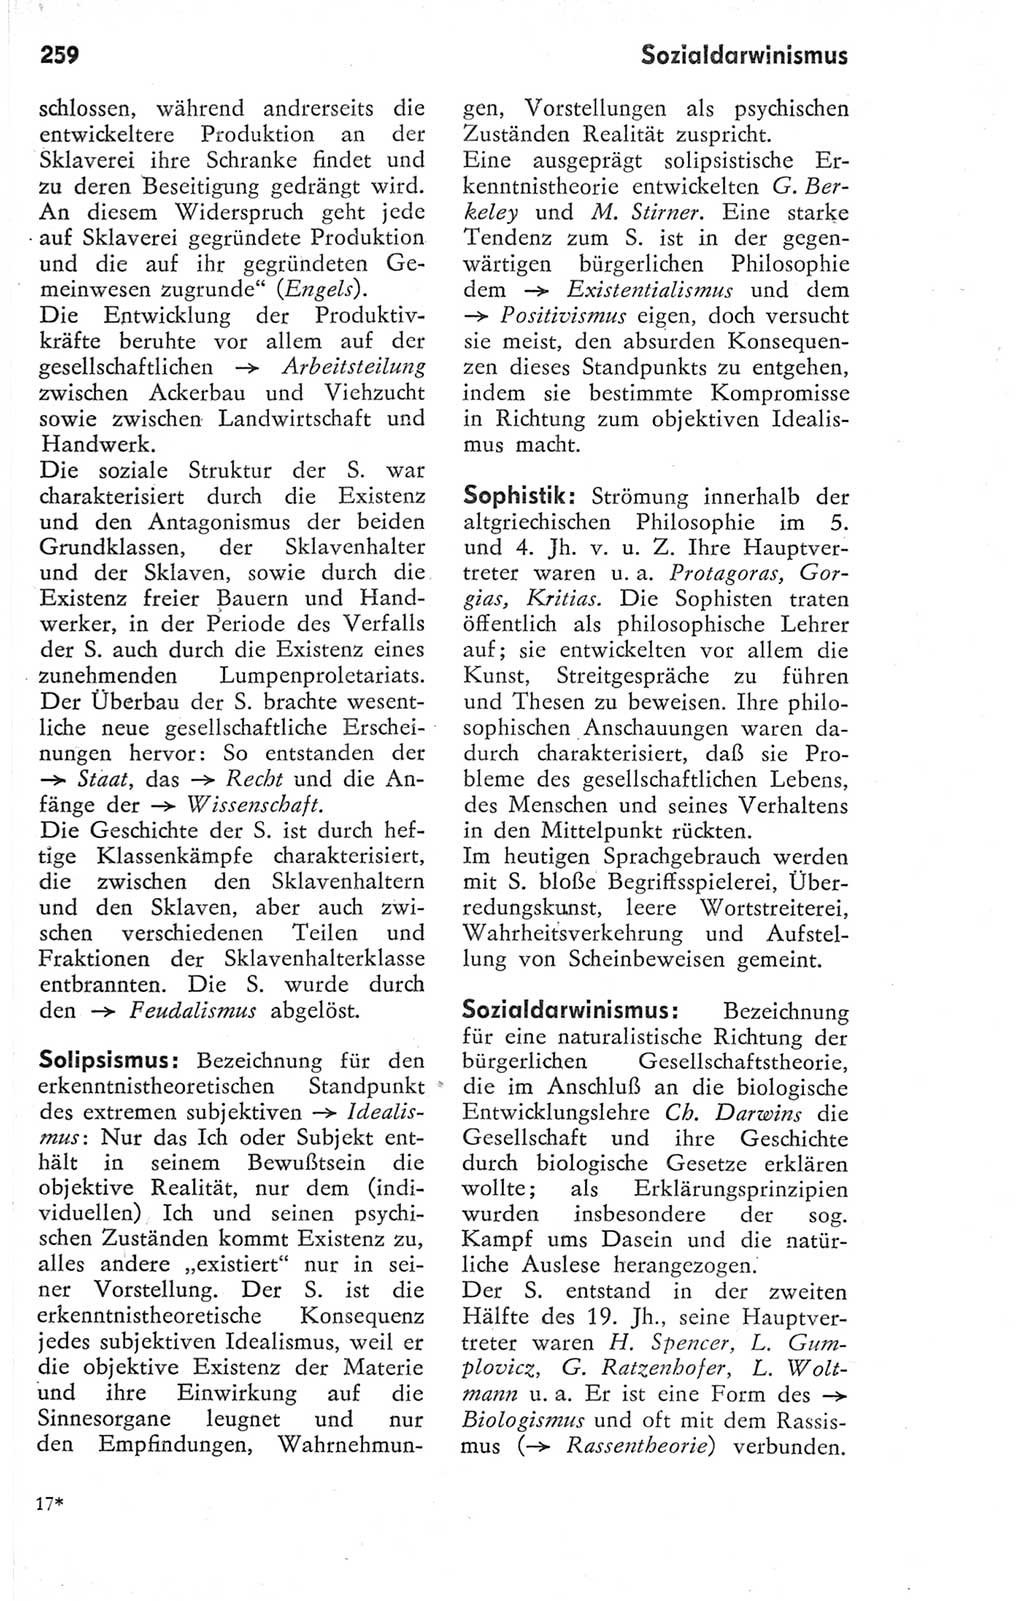 Kleines Wörterbuch der marxistisch-leninistischen Philosophie [Deutsche Demokratische Republik (DDR)] 1974, Seite 259 (Kl. Wb. ML Phil. DDR 1974, S. 259)